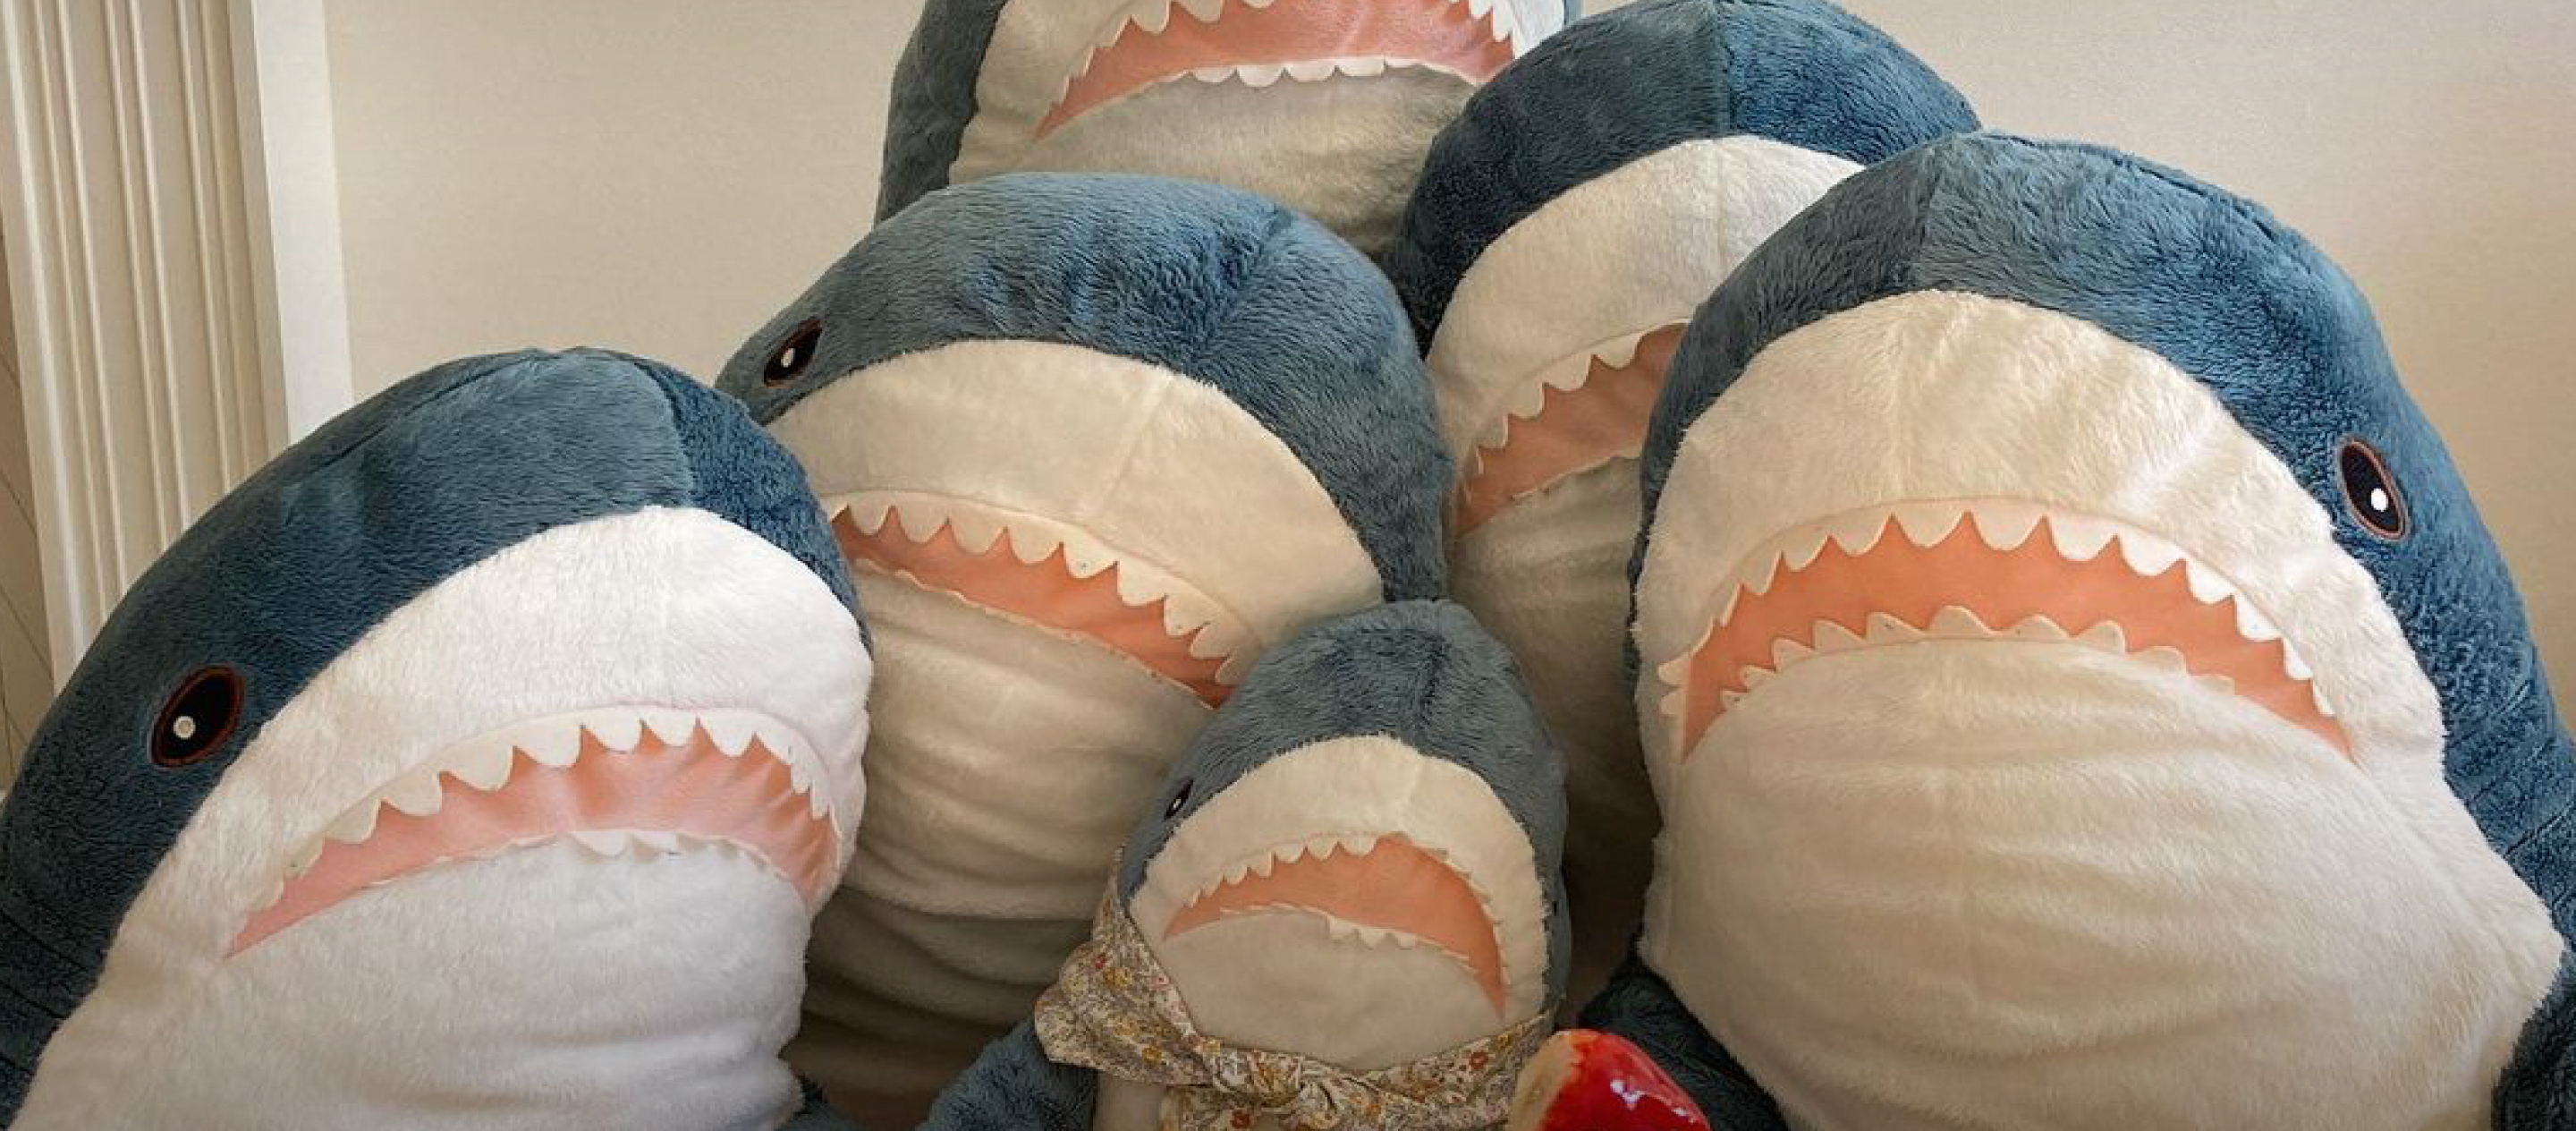 รู้จักแก๊งฉลามแห่ง tsuntsuku2 ไอจีของคุณแม่ญี่ปุ่นที่ใช้ตุ๊กตาเล่าเรื่องพิเศษของวันธรรมดา